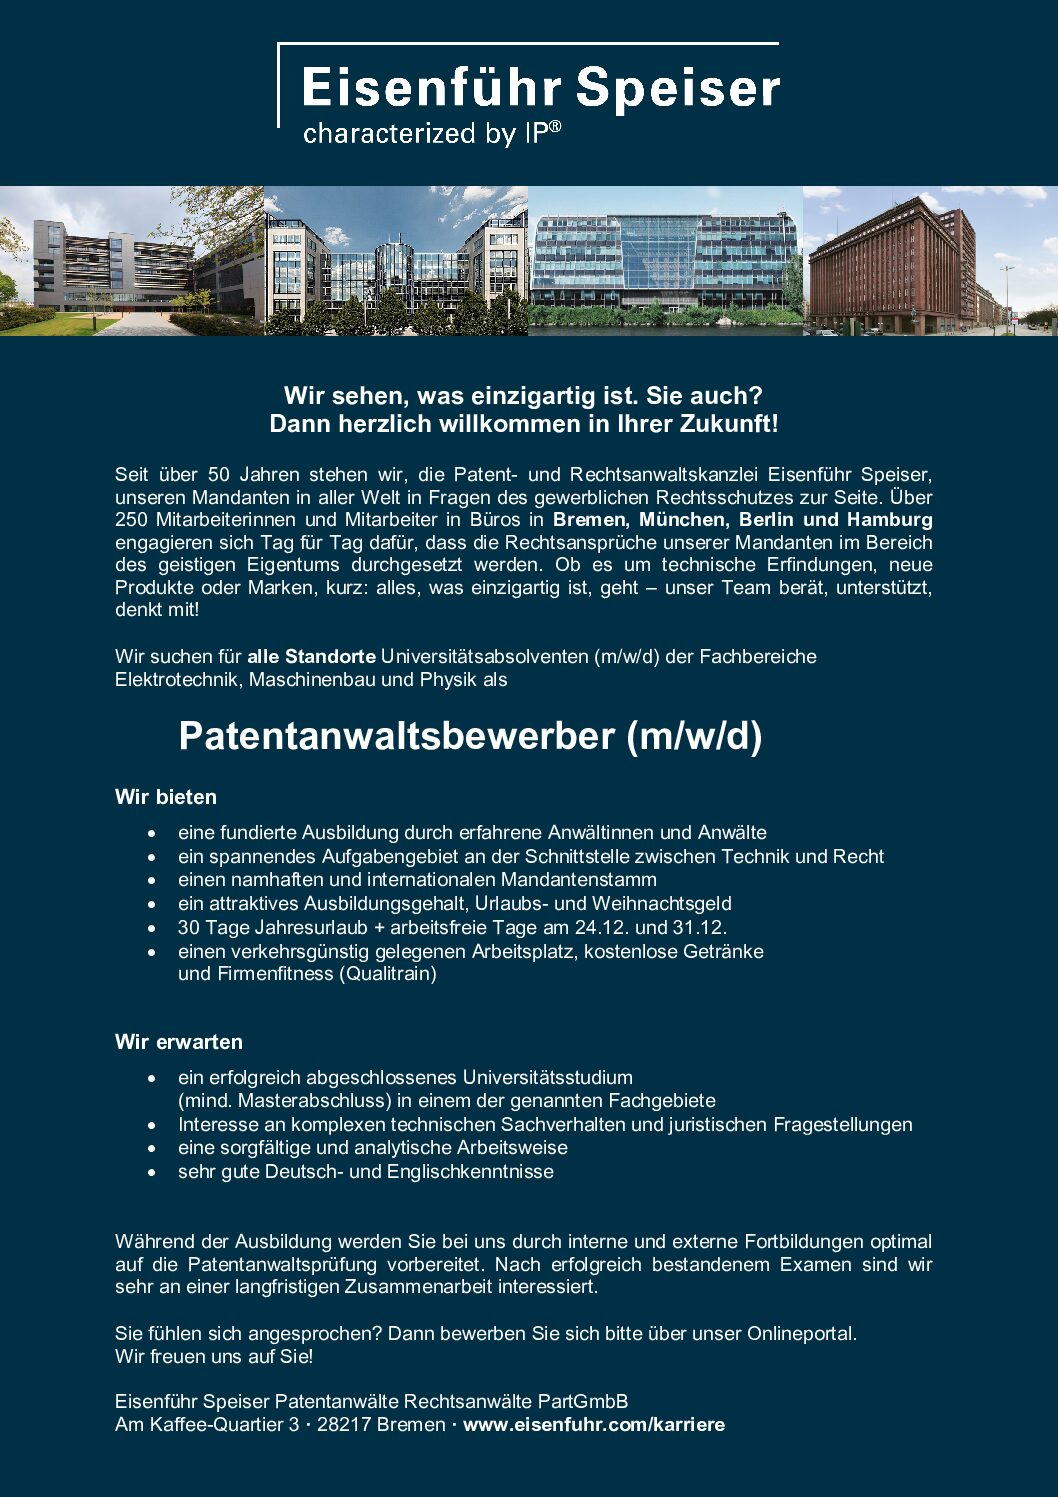 Eisenfuehr-Speiser_PatentanwaltsbewerberIn-6-pdf  